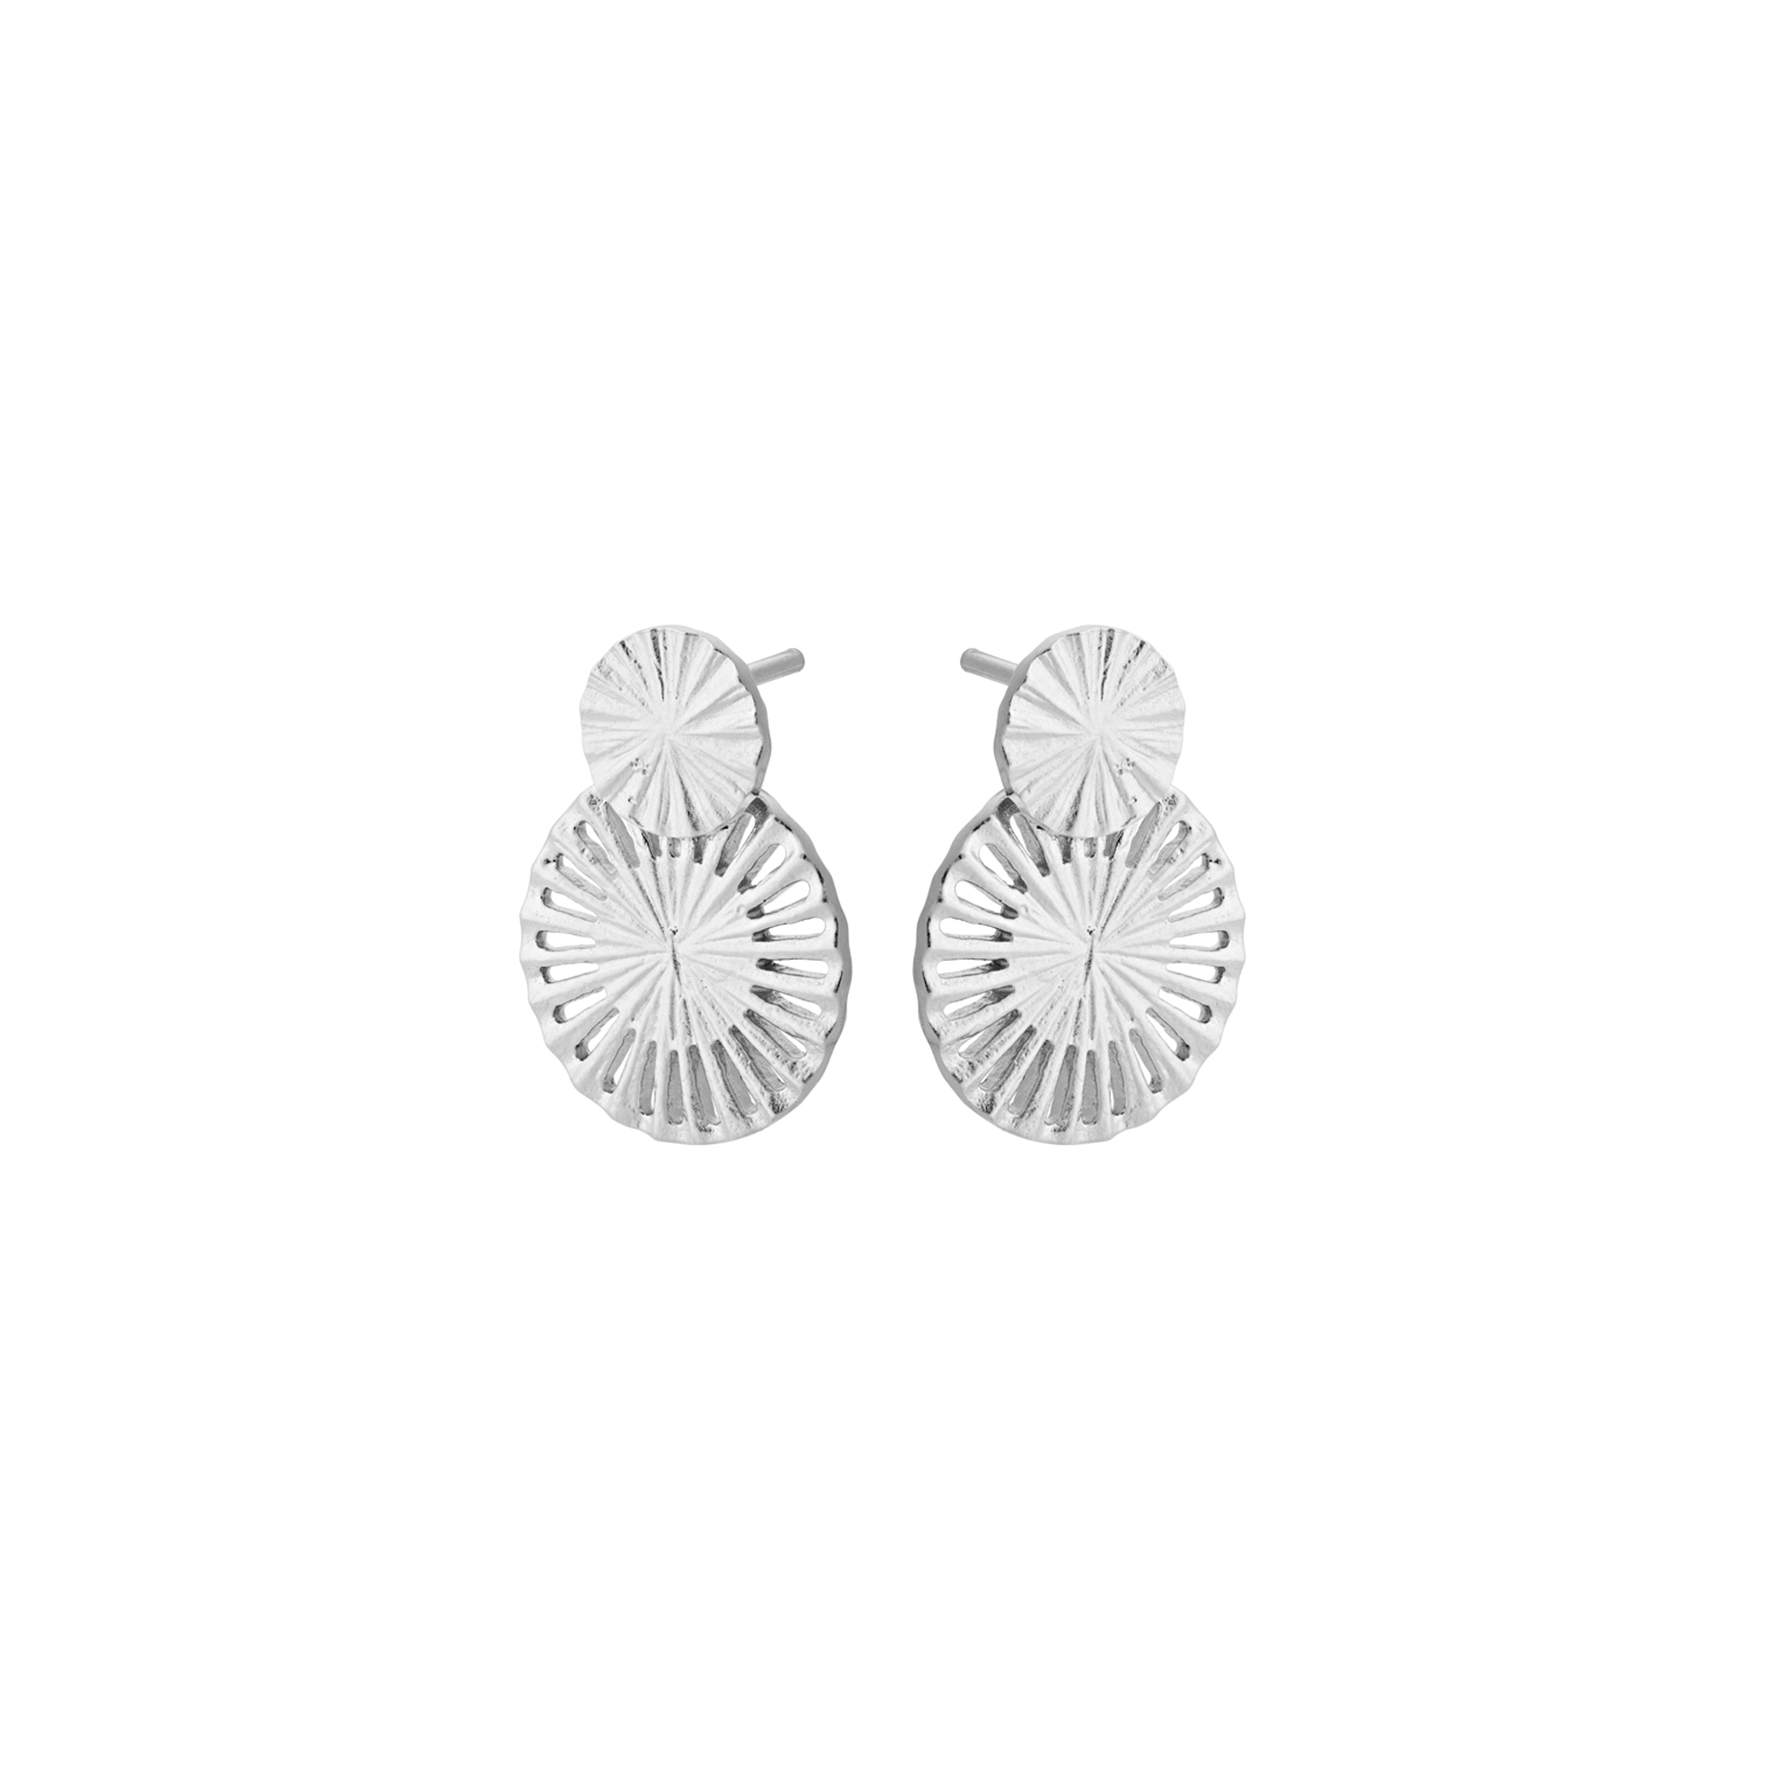 Small Starlight Earrings fra Pernille Corydon i Sølv Sterling 925